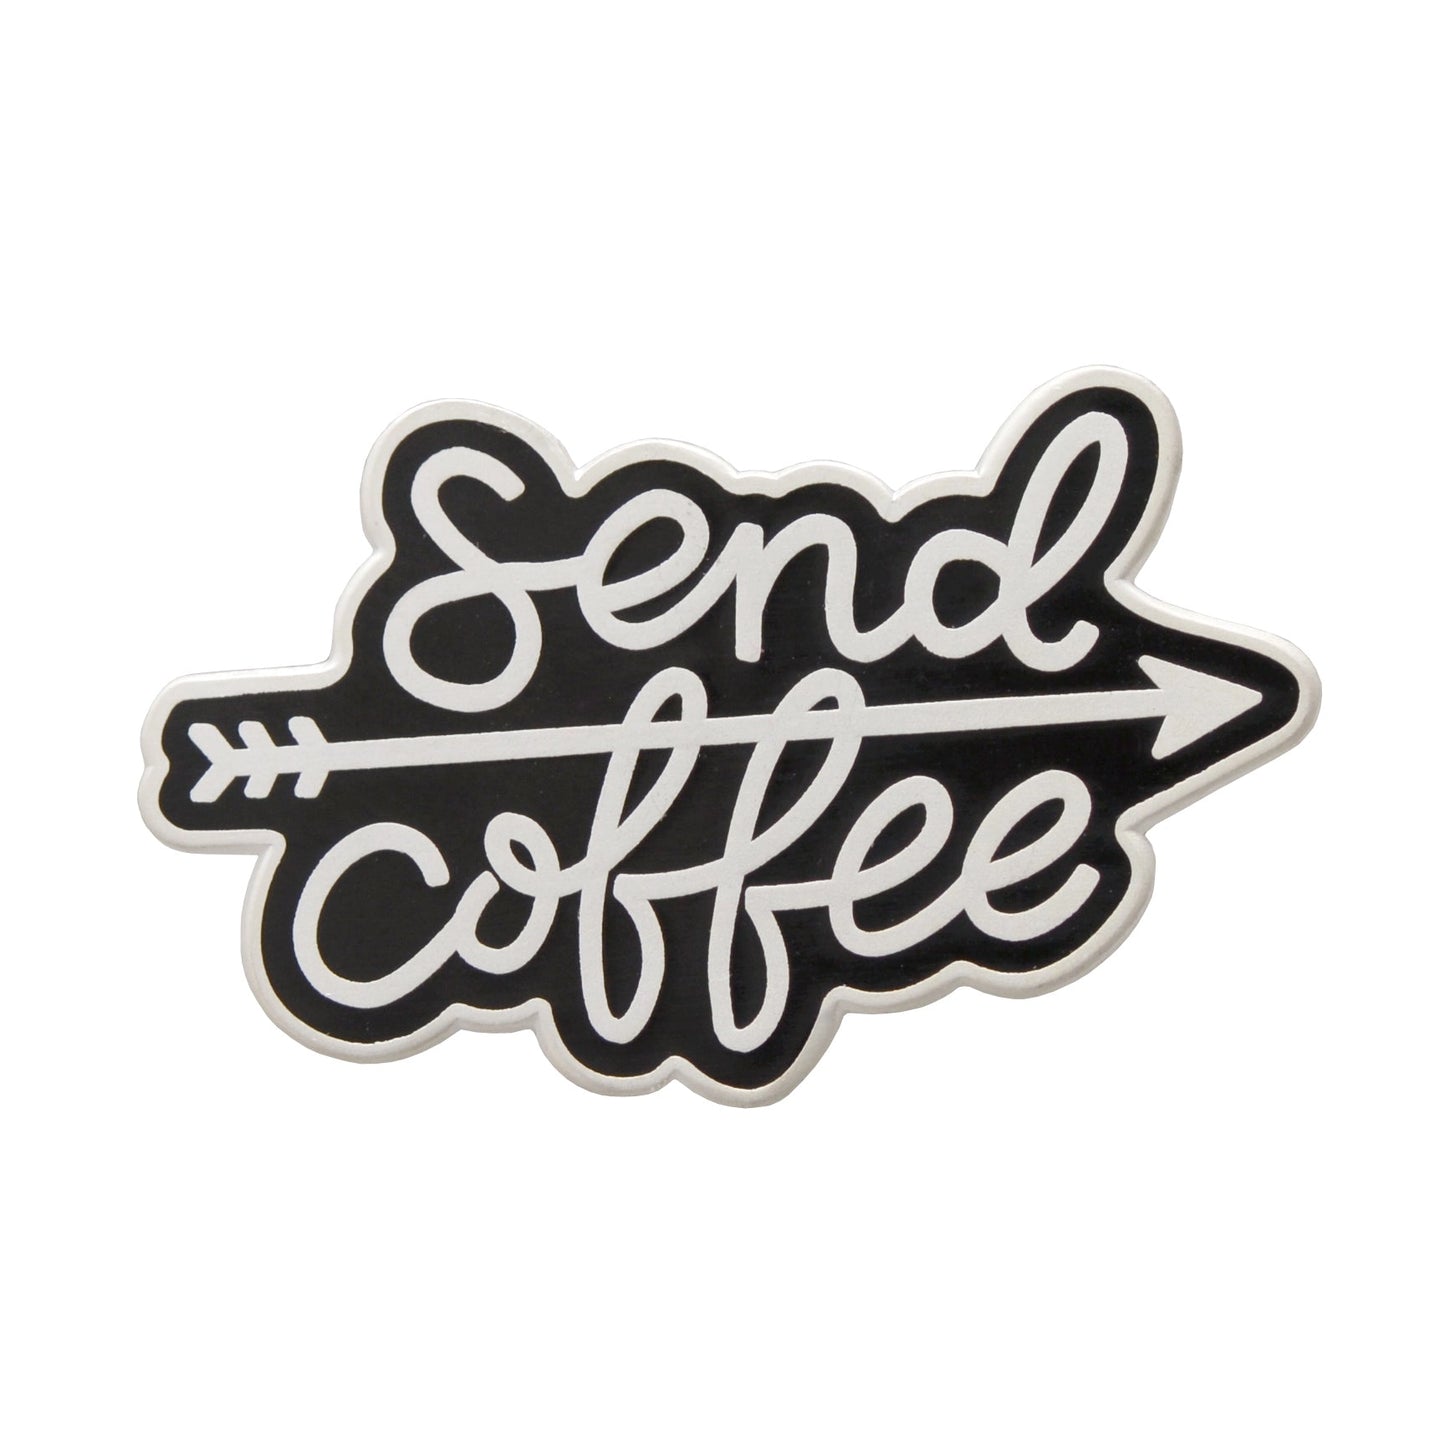 Send Coffee - Pin Badge